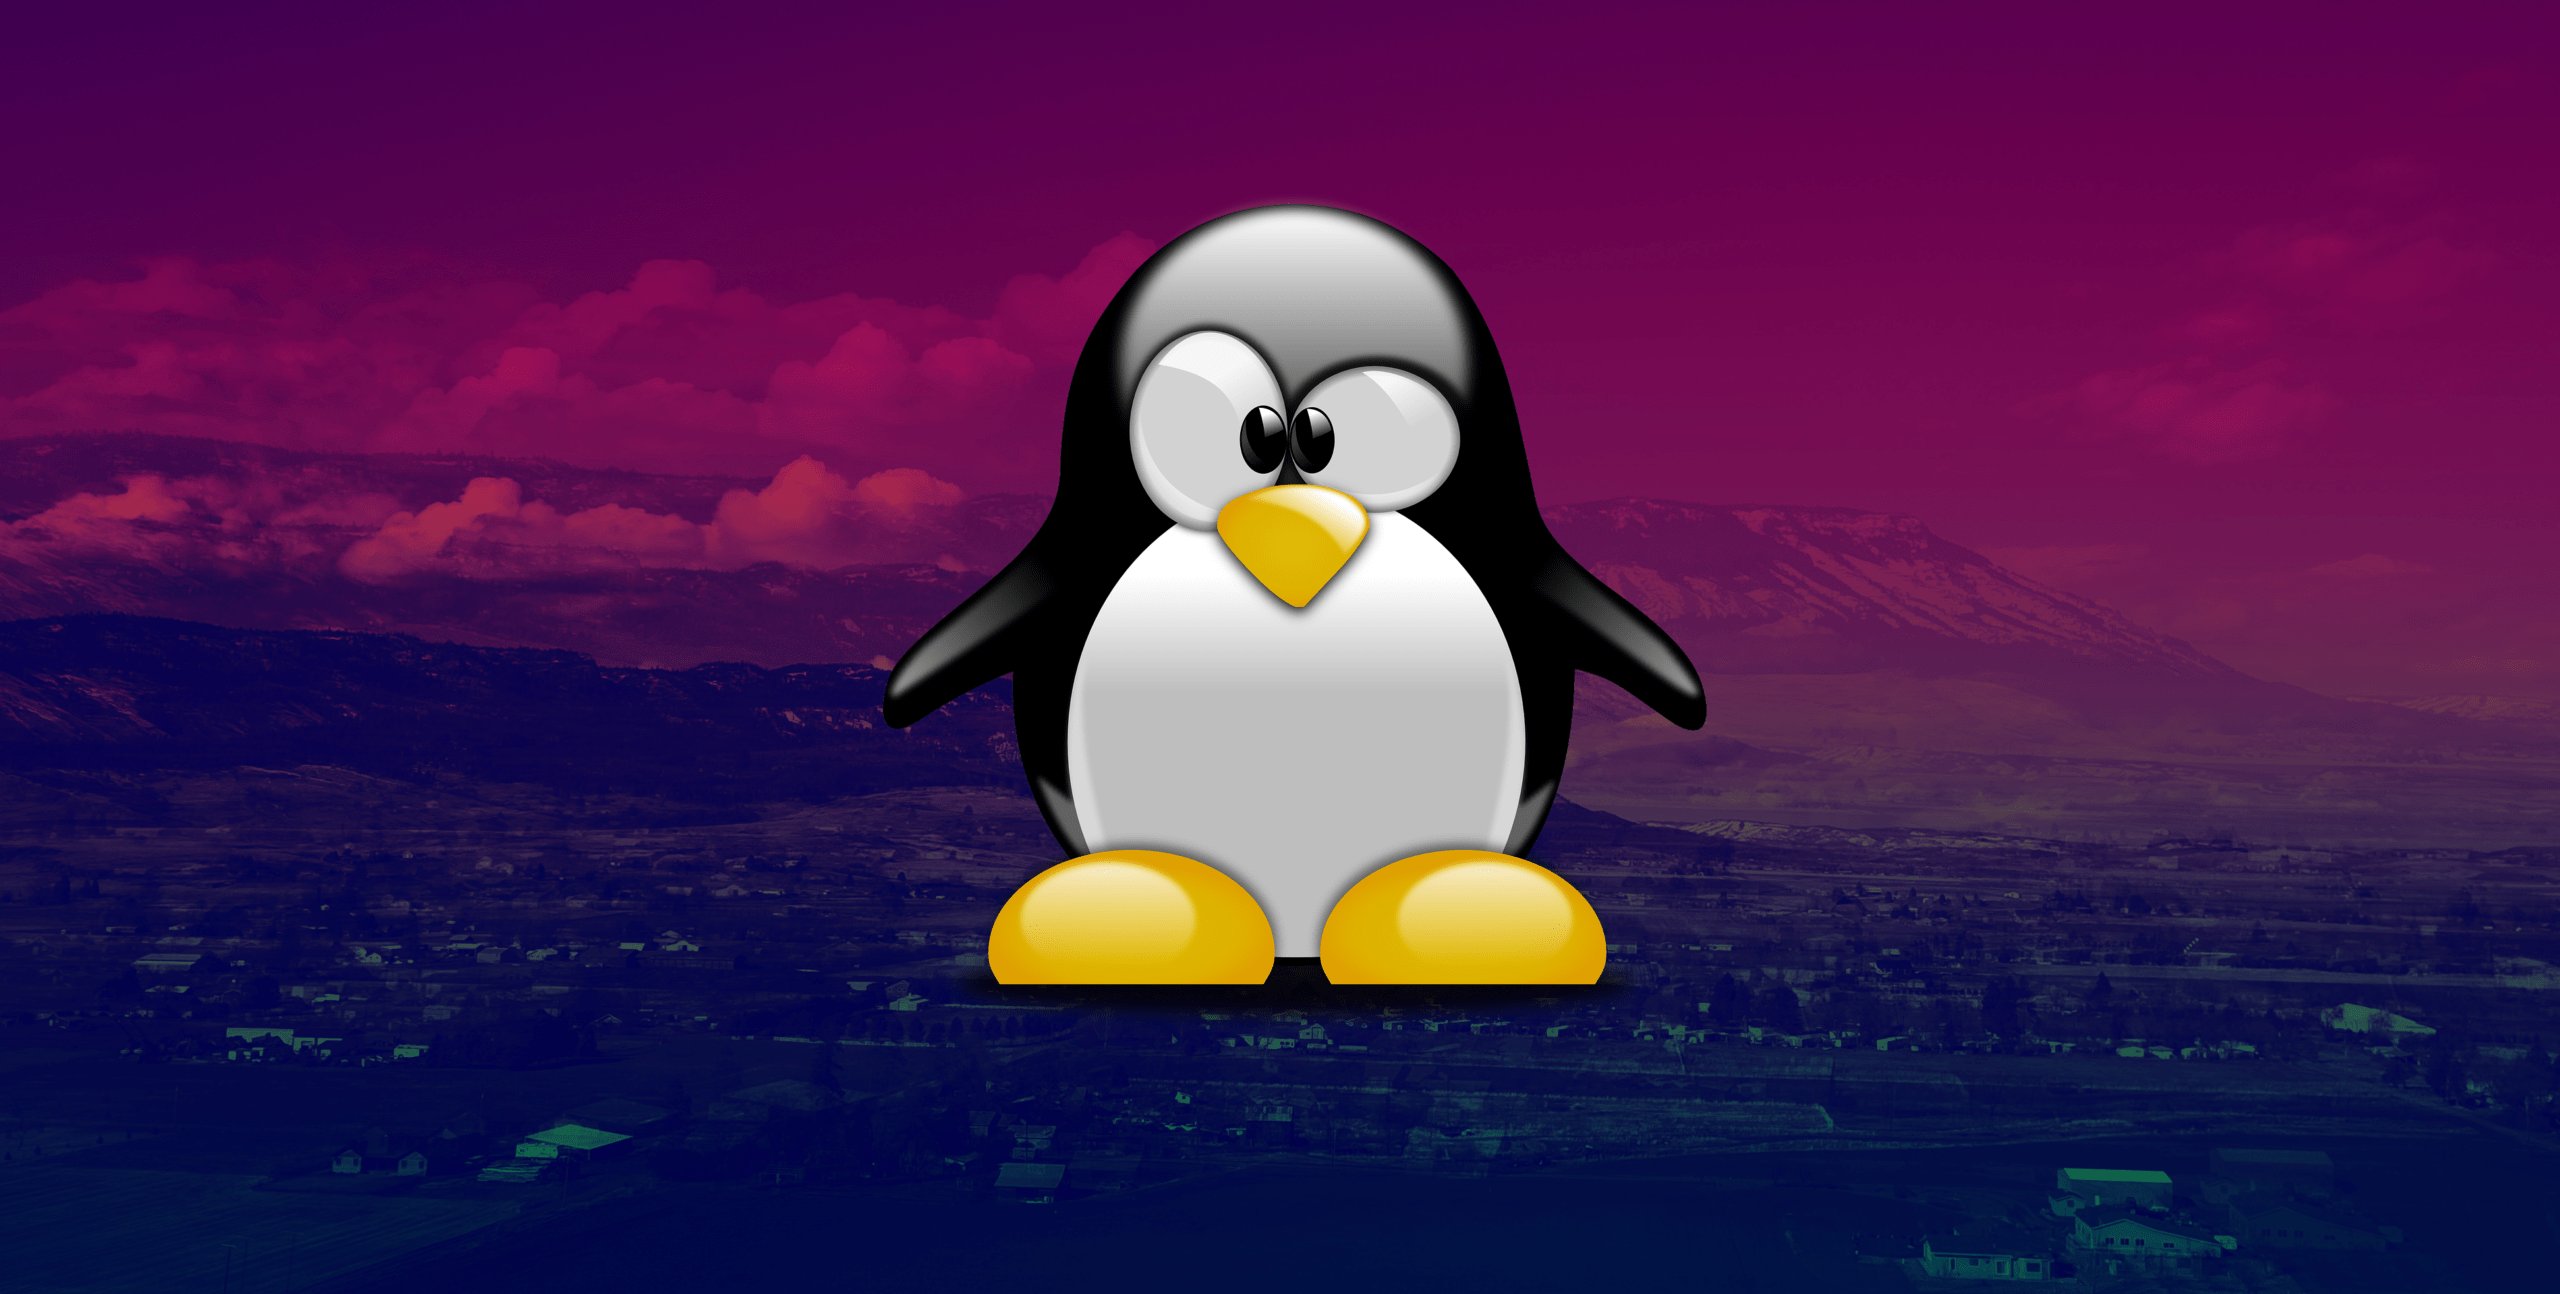 5 dystrybucji Linuxa do zadań specjalnych